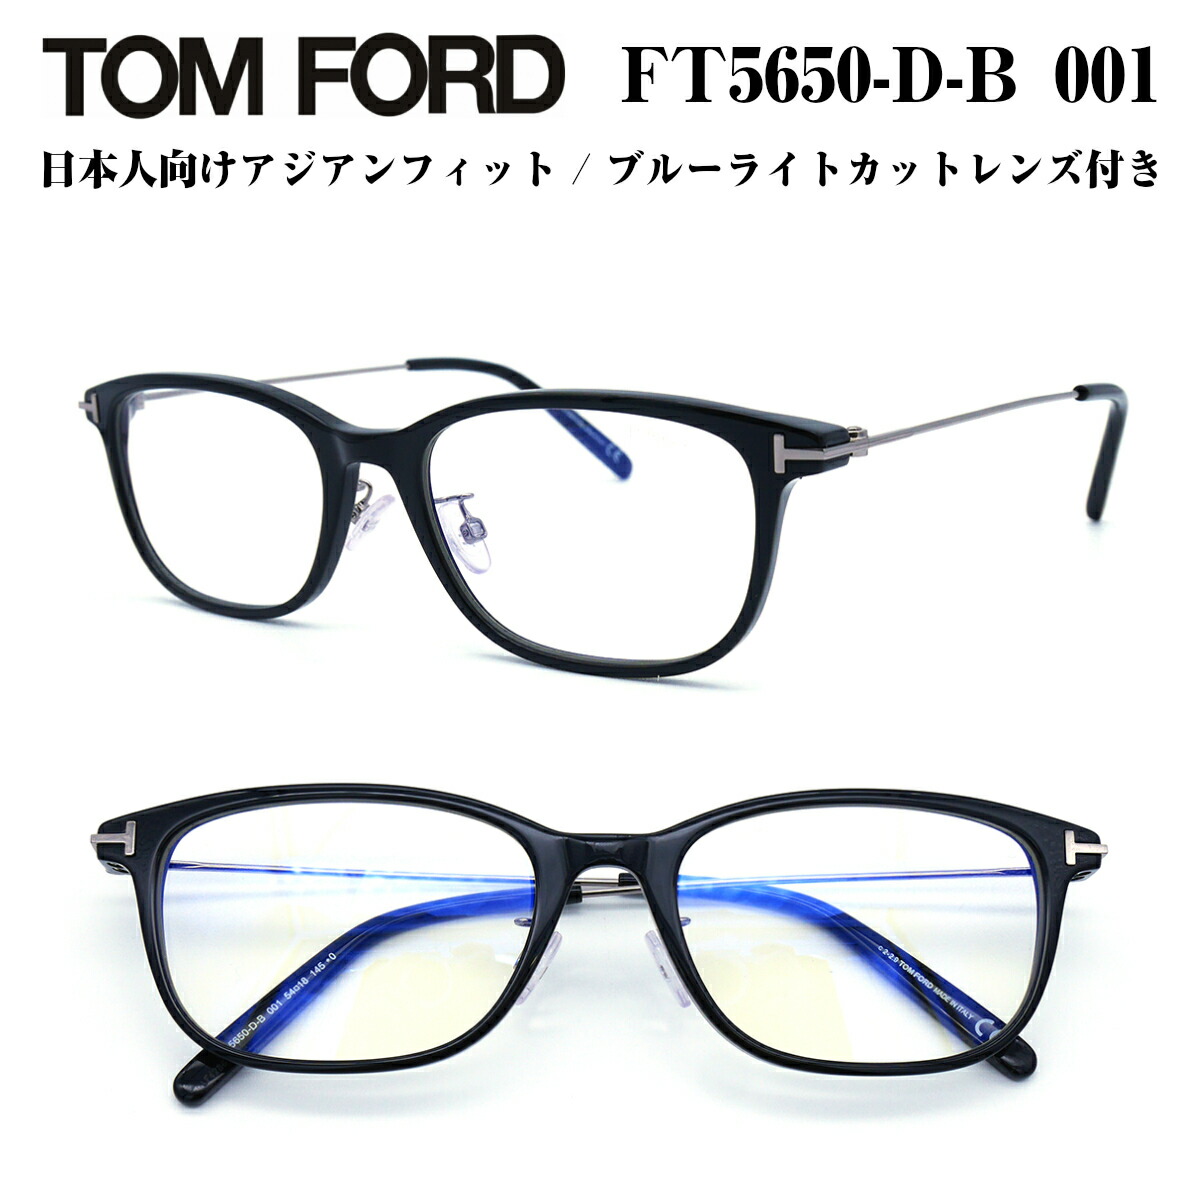 TOM FORD トムフォード FT5650DB-001 (TF5650DB-001) 54 サイズ メガネ 眼鏡 めがね フレーム アジアンフィット  ブルーライトカットレンズ付き ダテメガネ 正規品 度付き対応 TOMFORD メンズ 男性 おしゃれ 日本企画 | メガネ補聴器の専門店　アイニード